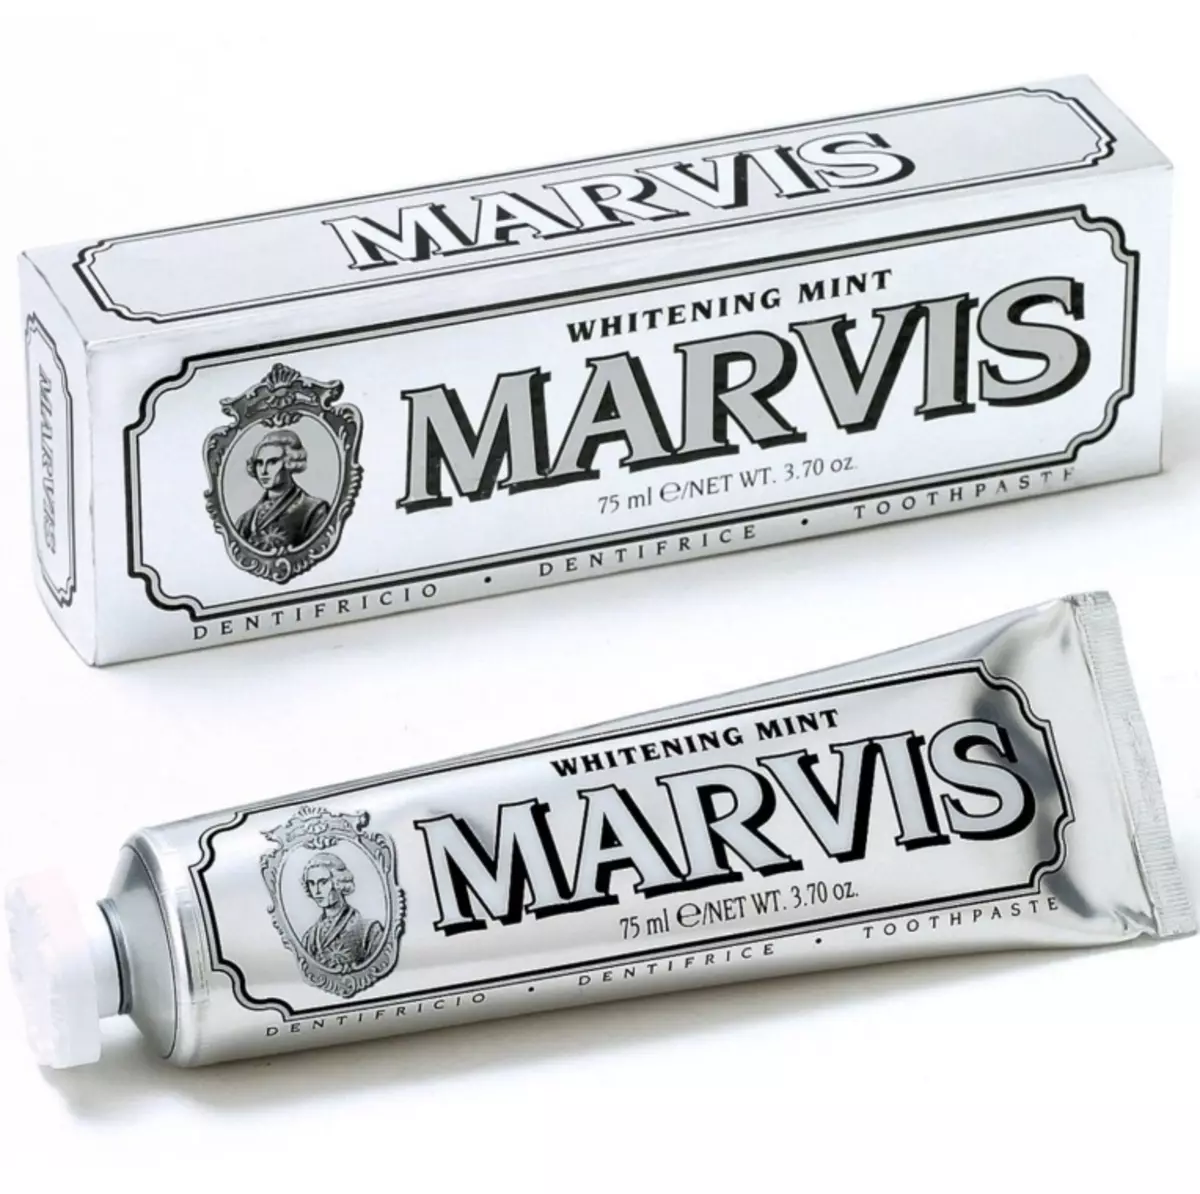 ยาสีฟัน Marvis: วางขาวอิตาลีด้วยรสชาติมิ้นต์และดอกมะลิไม่มีฟลูออรีนตั้งองค์ประกอบและความคิดเห็นของทันตแพทย์ 24032_11